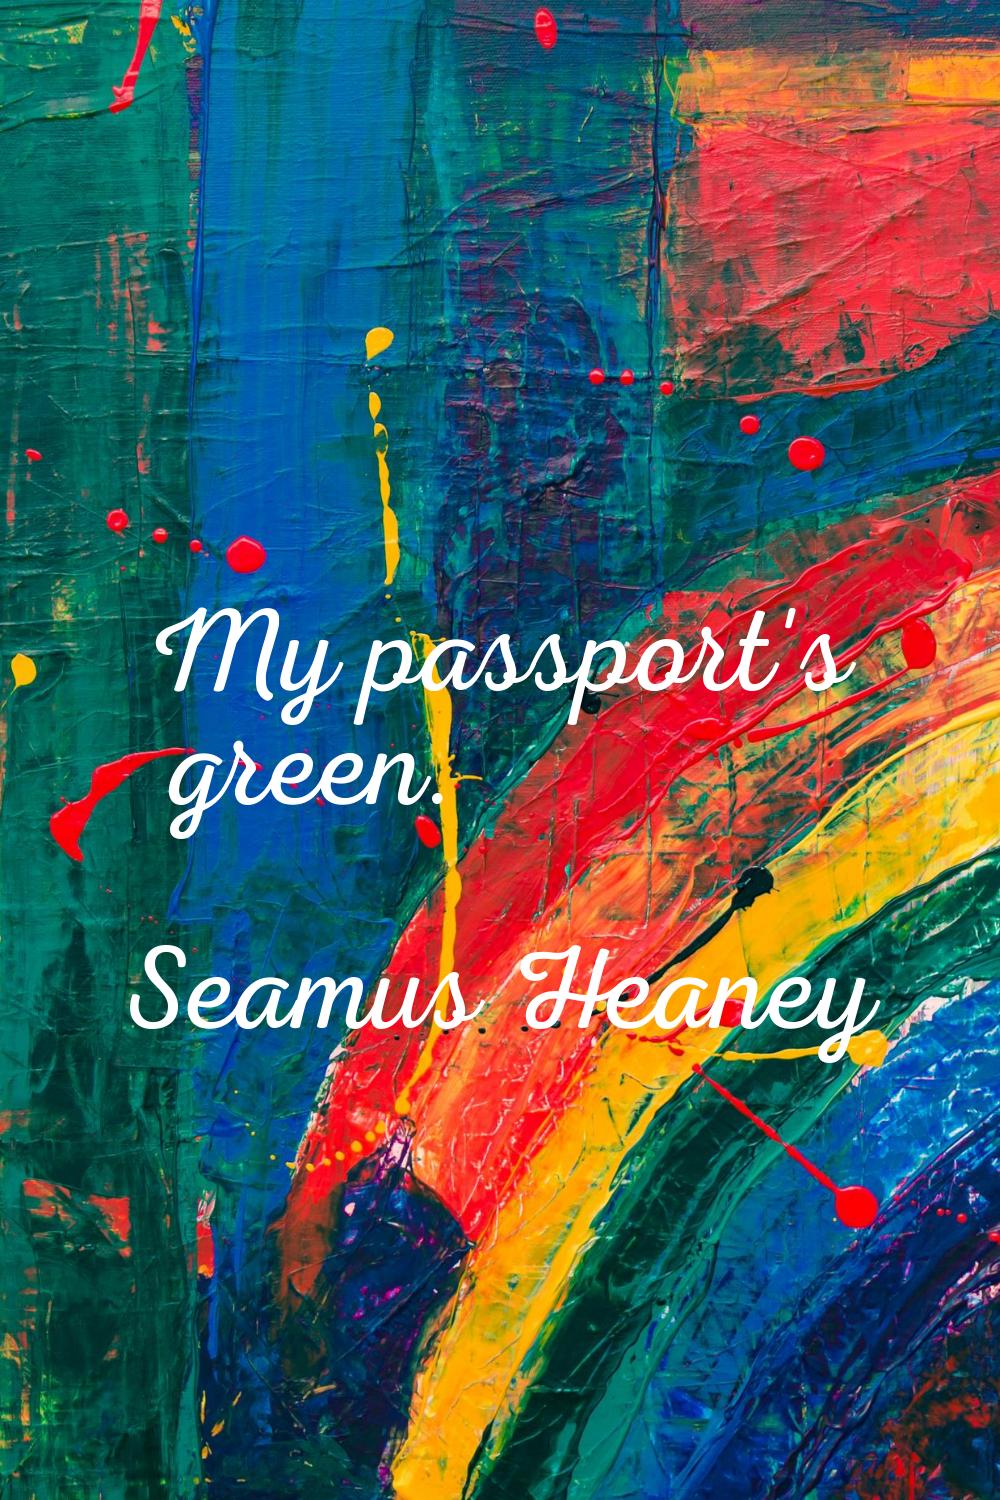 My passport's green.